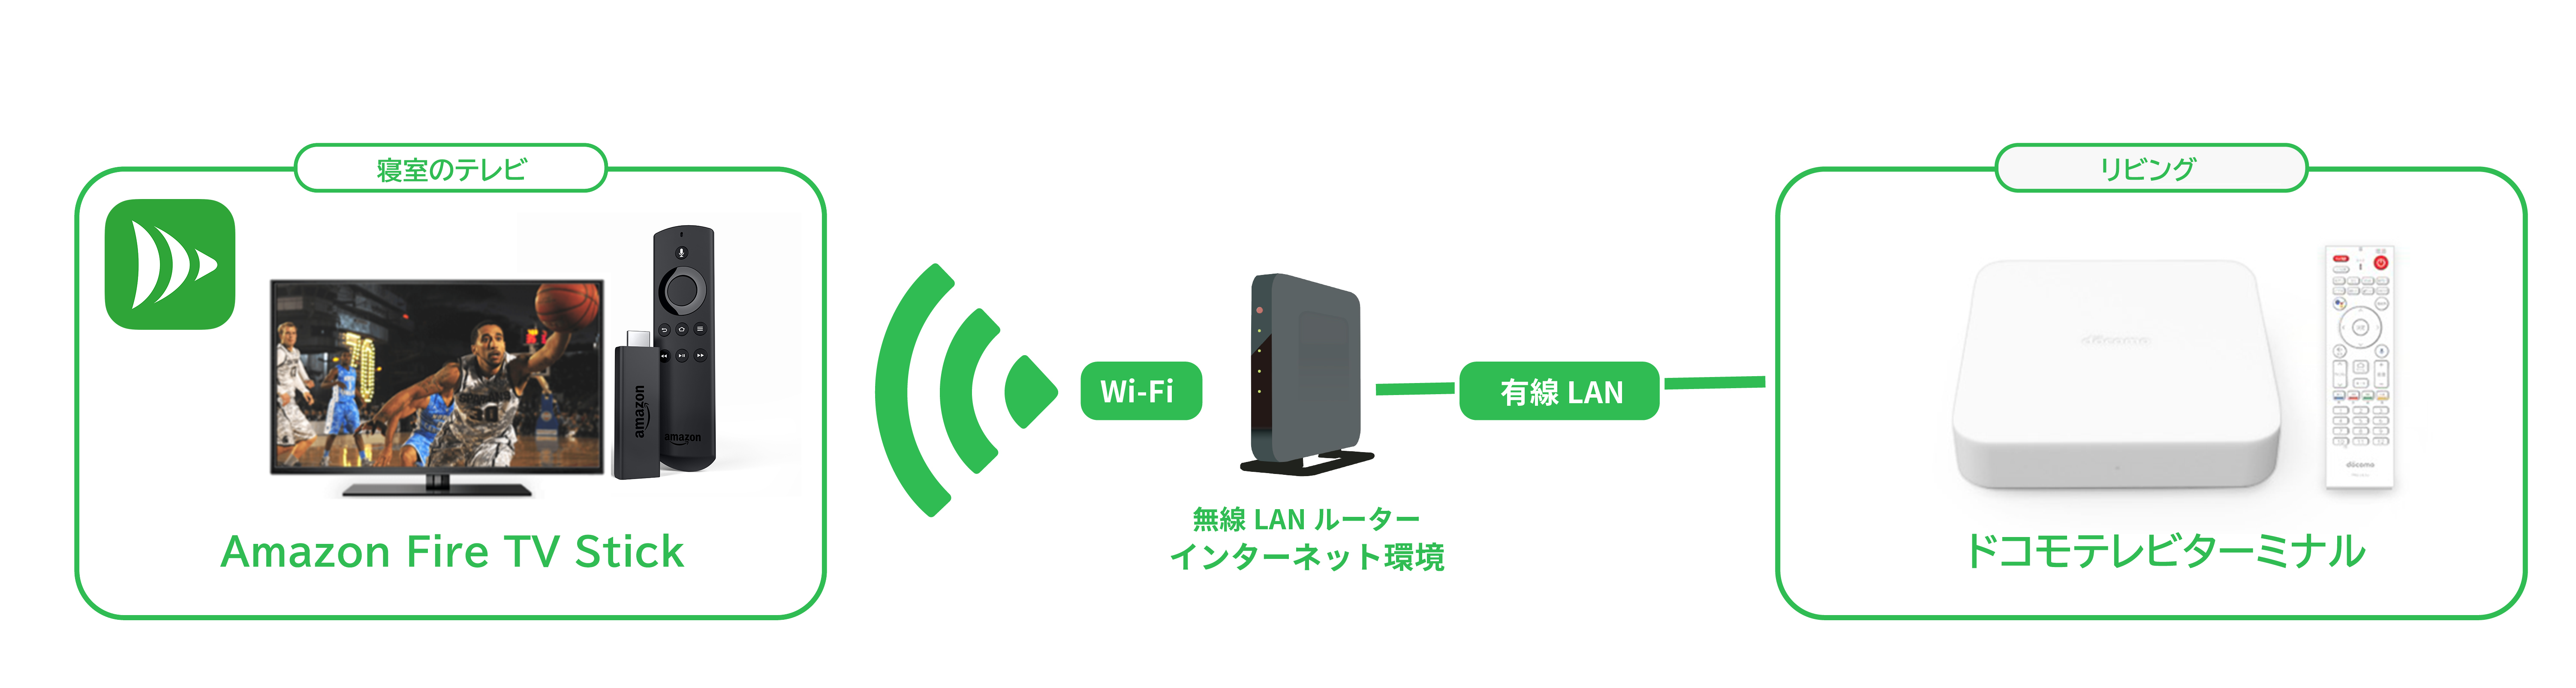 Amazon Fire TVに、「DiXiM Play Amazon Fire TV版」をインストールすると、ドコモテレビターミナルから、Wi-Fi経由で番組のストリームを受信することができます。